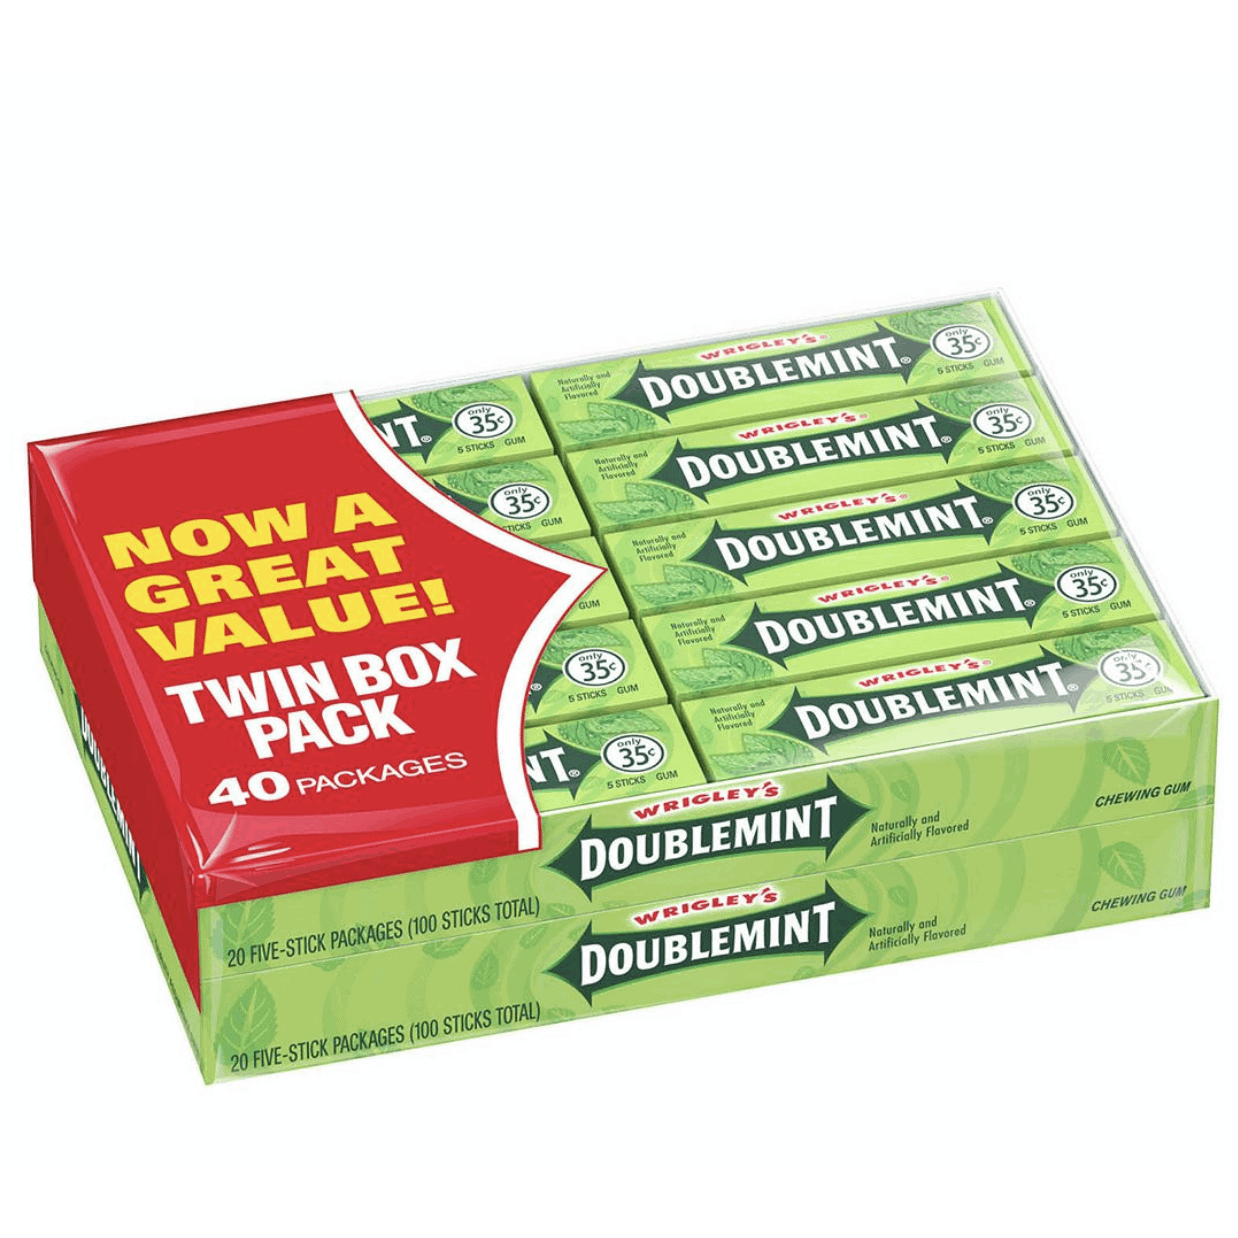 Wrigley's Doublemint Gum Twin Box, 40 pk./5 ct.